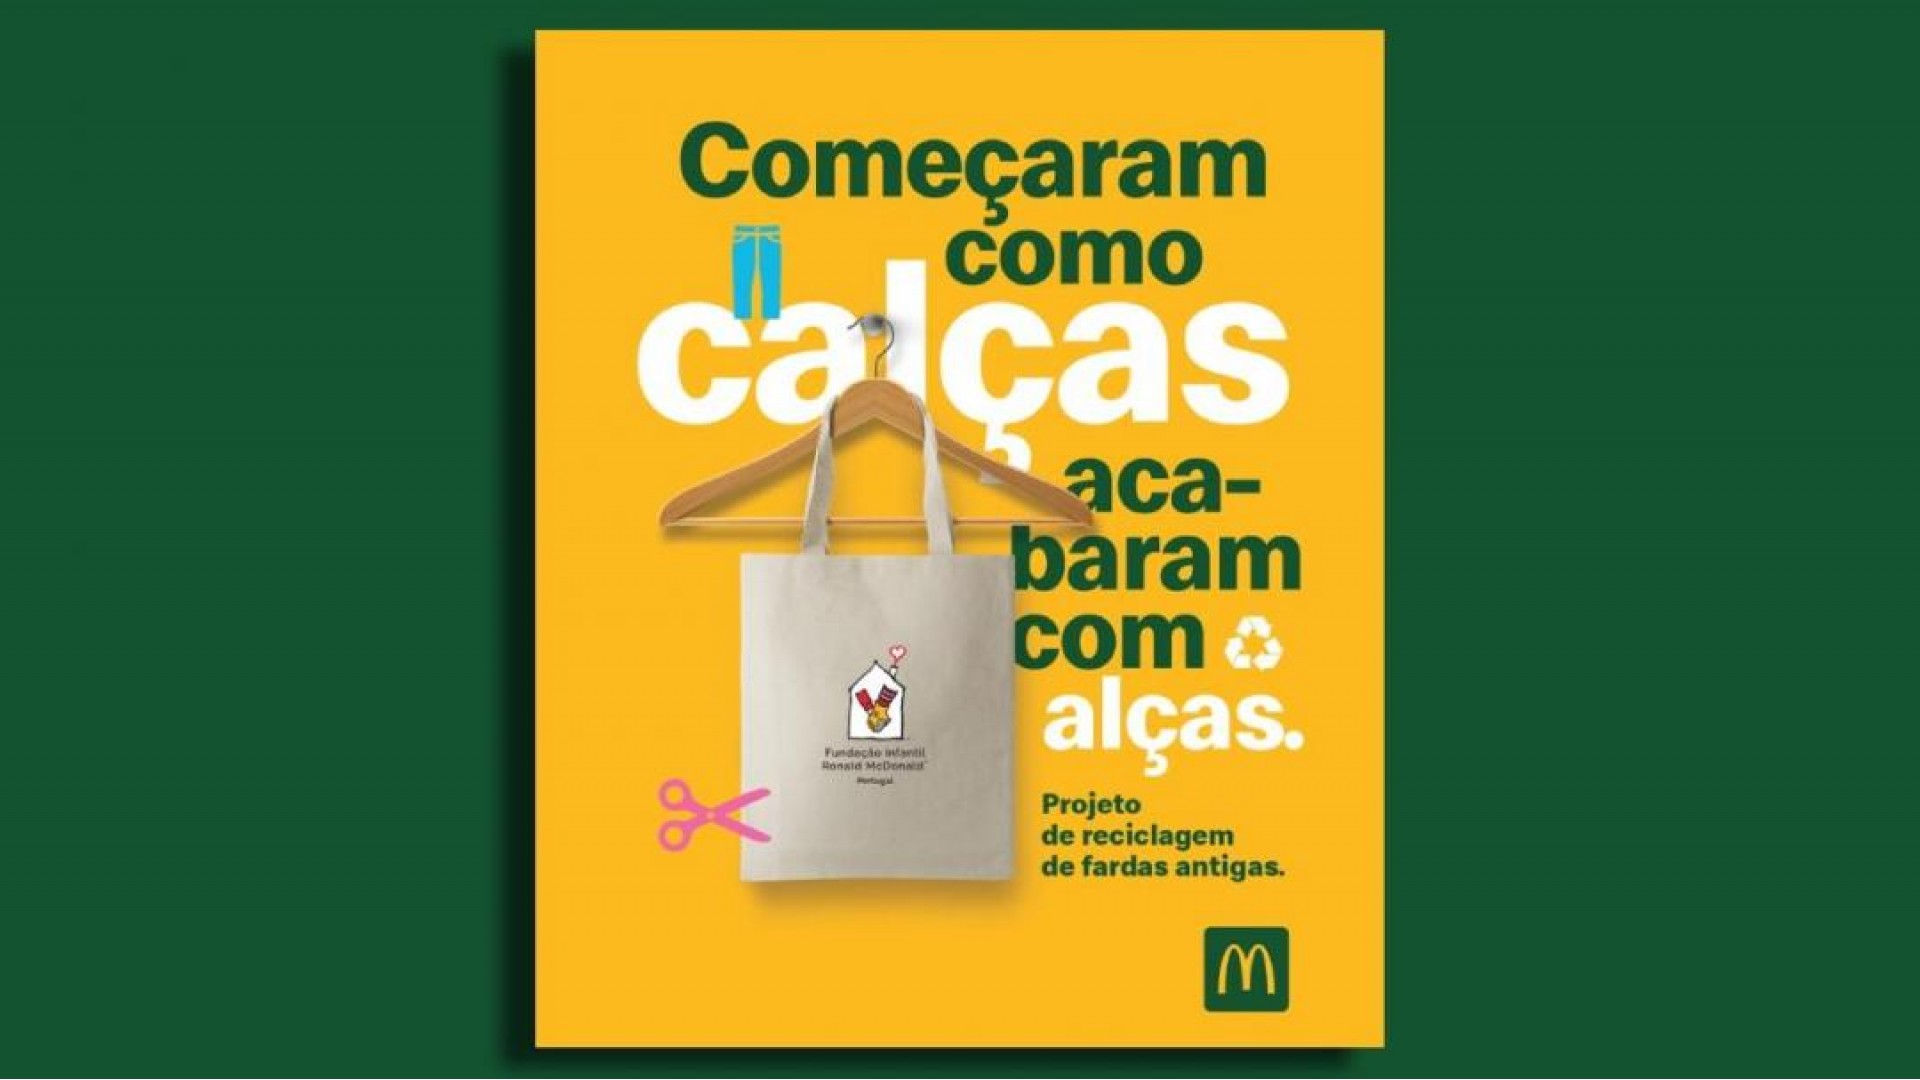 HR Group e Recutex reciclam fardas da McDonalds